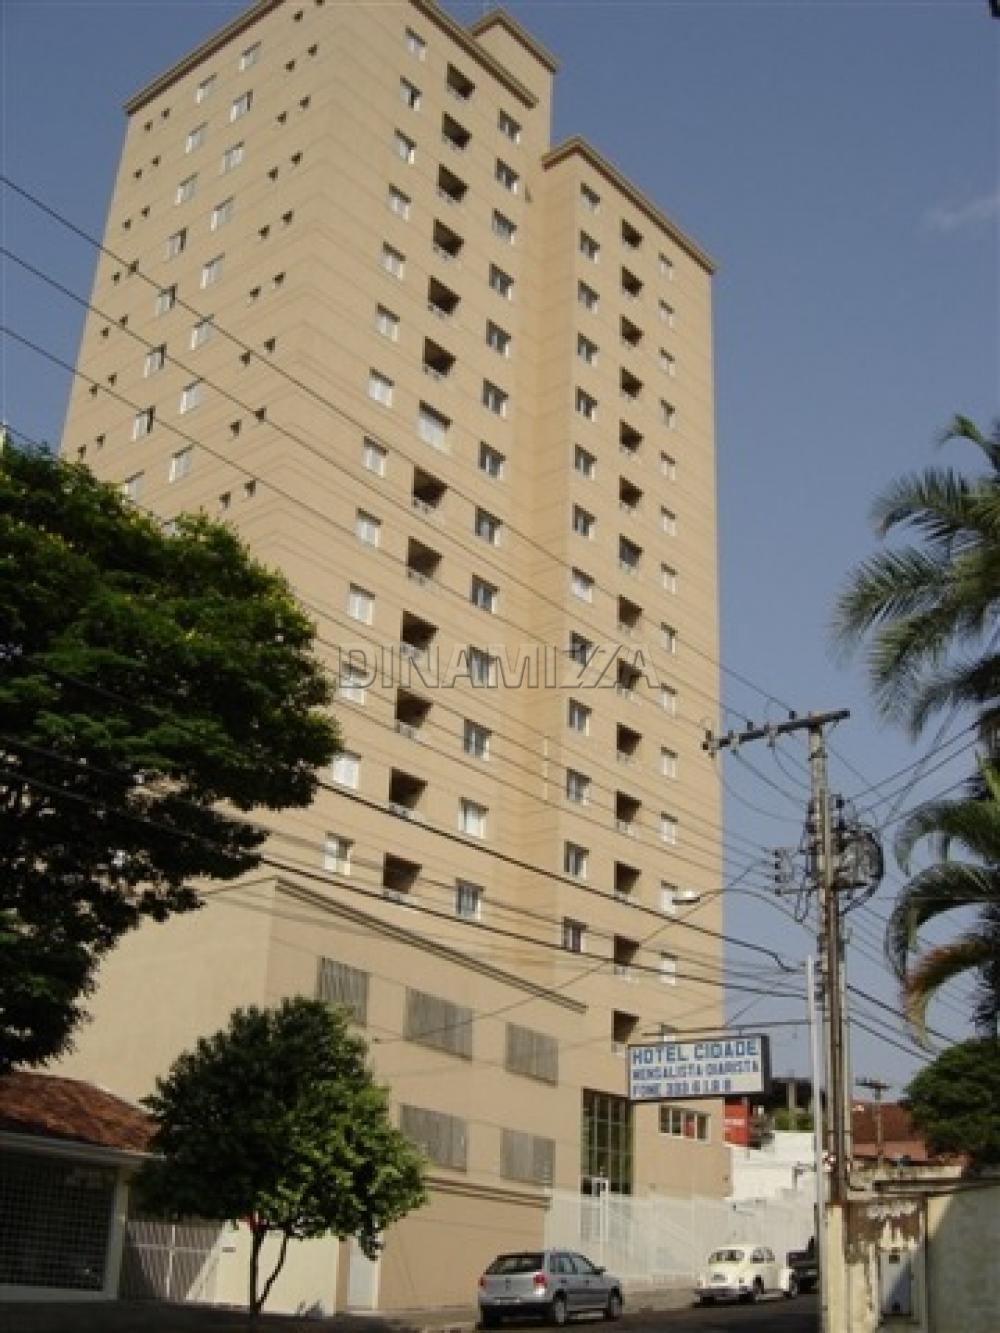 Uberaba Merces Apartamento Locacao R$ 1.200,00 1 Dormitorio 1 Vaga Area construida 1.00m2